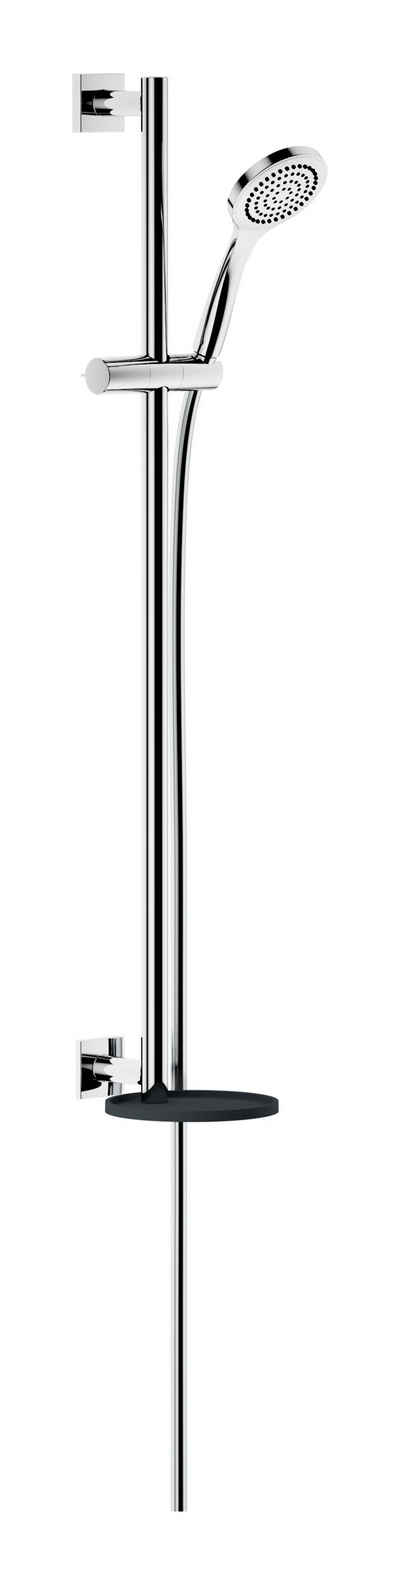 Keuco Brausegarnitur IXMO, Höhe 85.5 cm, 1 Strahlart(en), Brause-Set mit Ablage eckig - Verchromt / Anthrazit